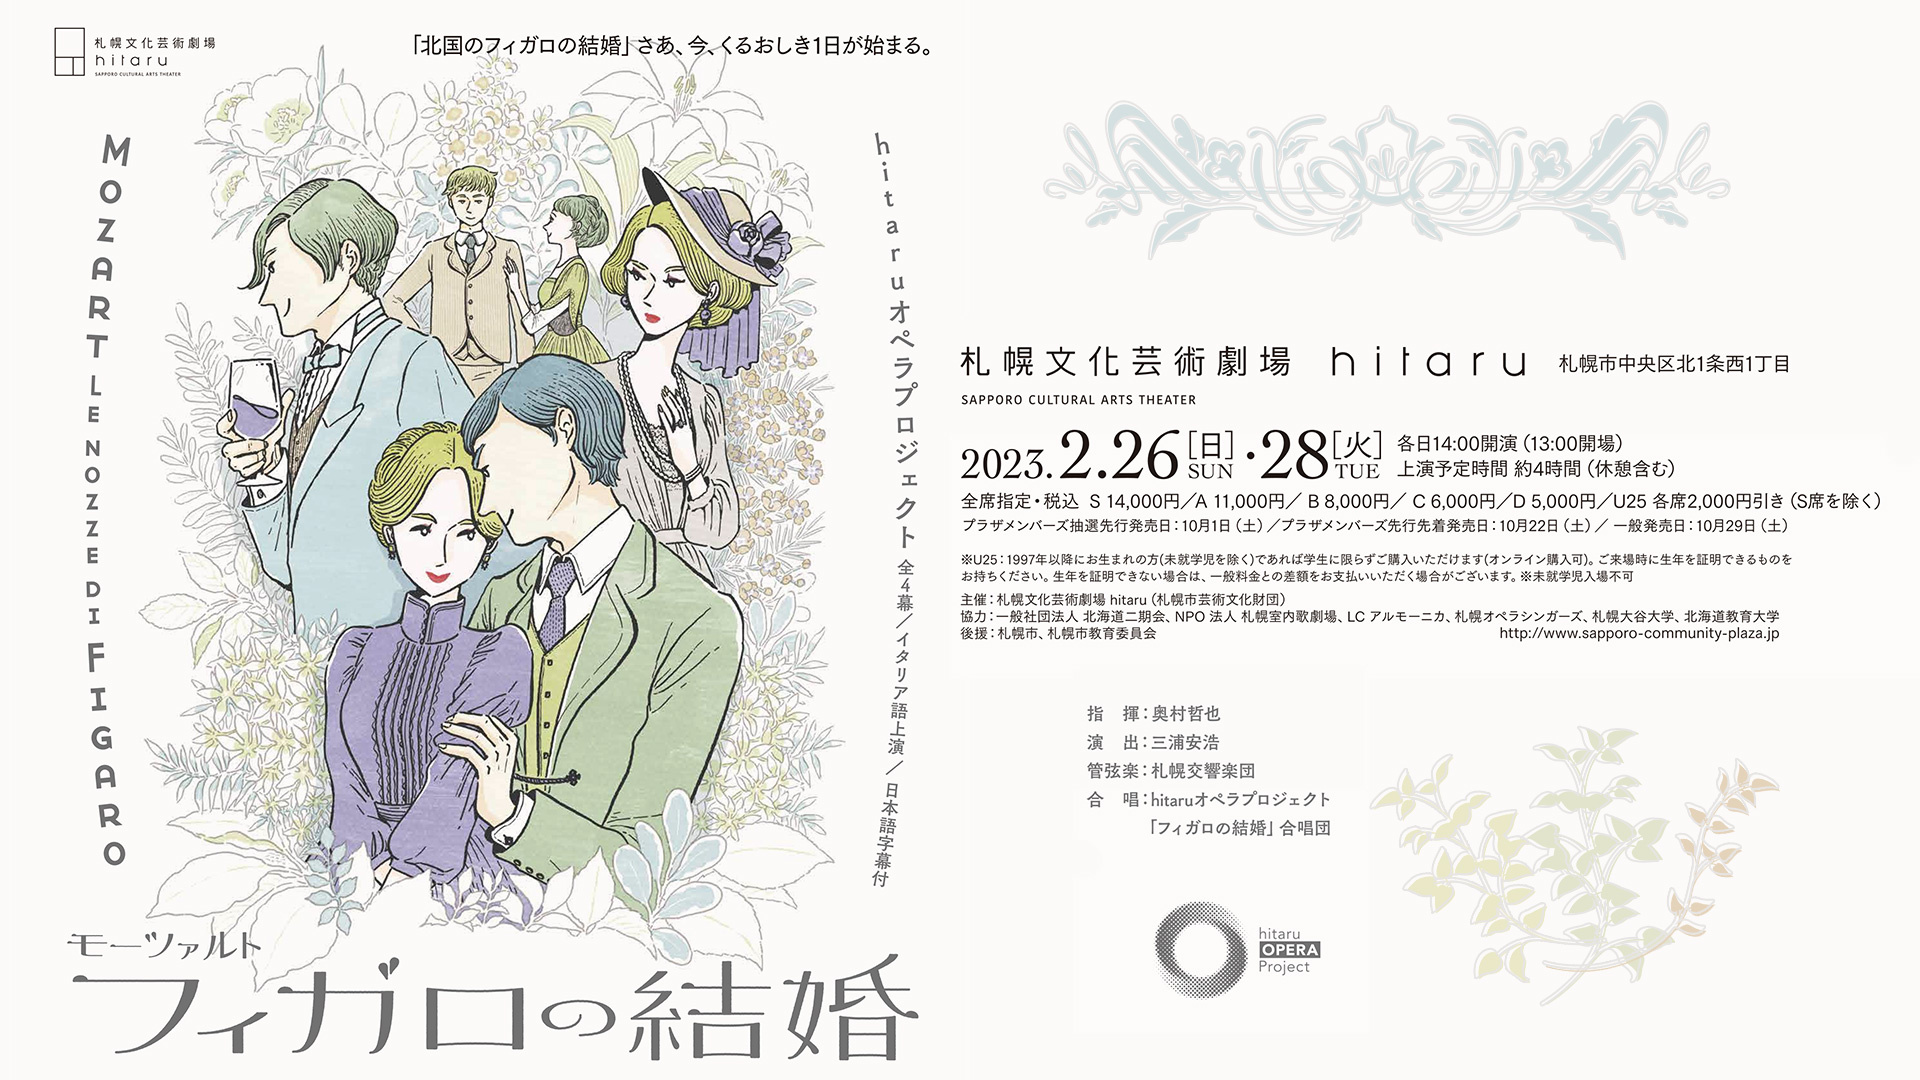 hitaruオペラプロジェクト モーツァルト「フィガロの結婚」 (全4幕 ・ イタリア語上演 ・ 日本語字幕付)